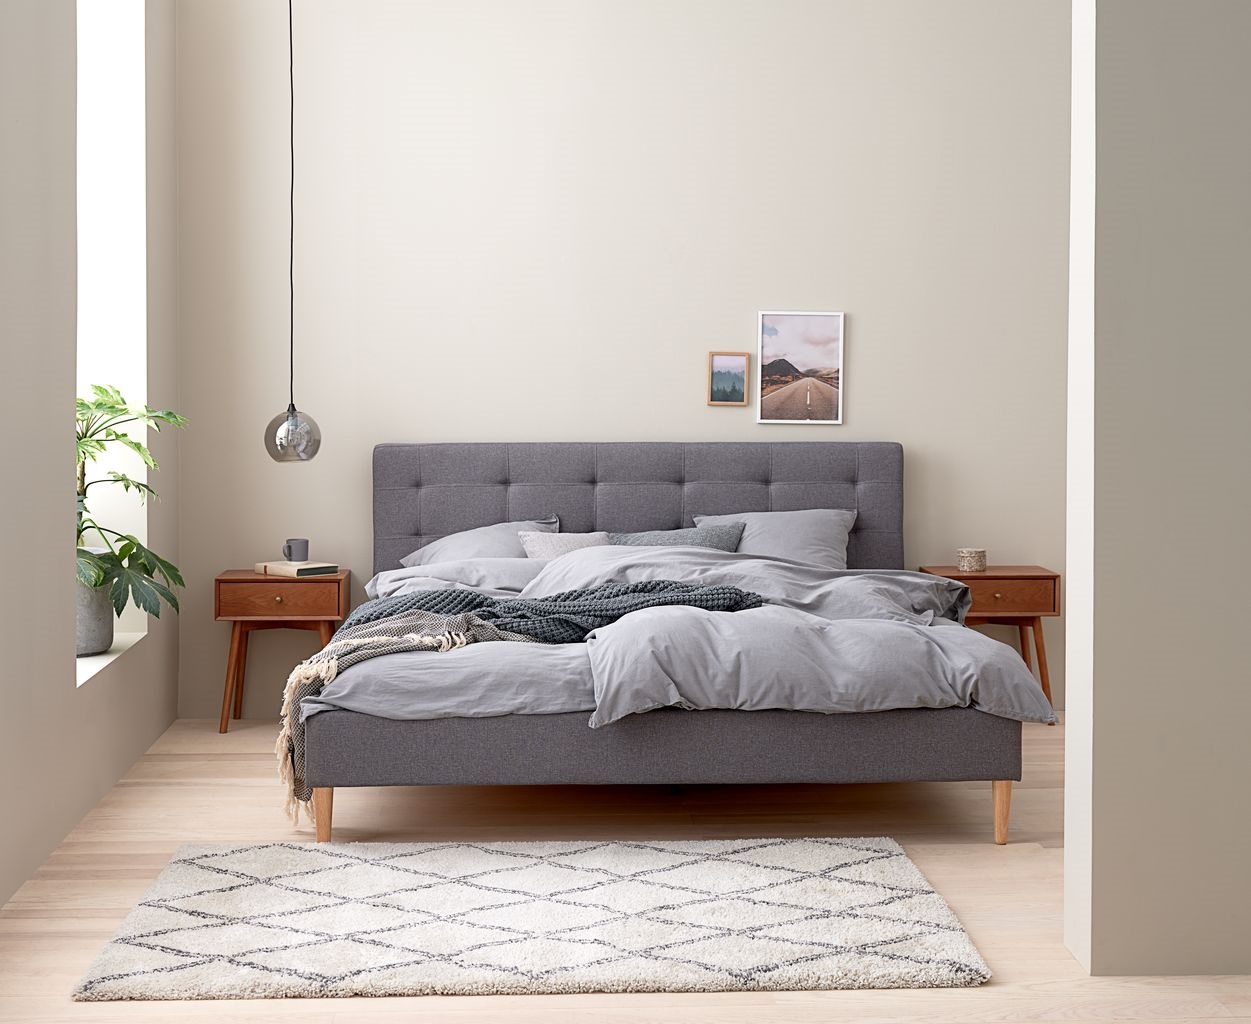 Mẫu 115144: Thiết kế phòng ngủ đẹp cho nam với khung giường MILLINGE làm từ gỗ công nghiệp, bọc vải Polyester xám nhạt.